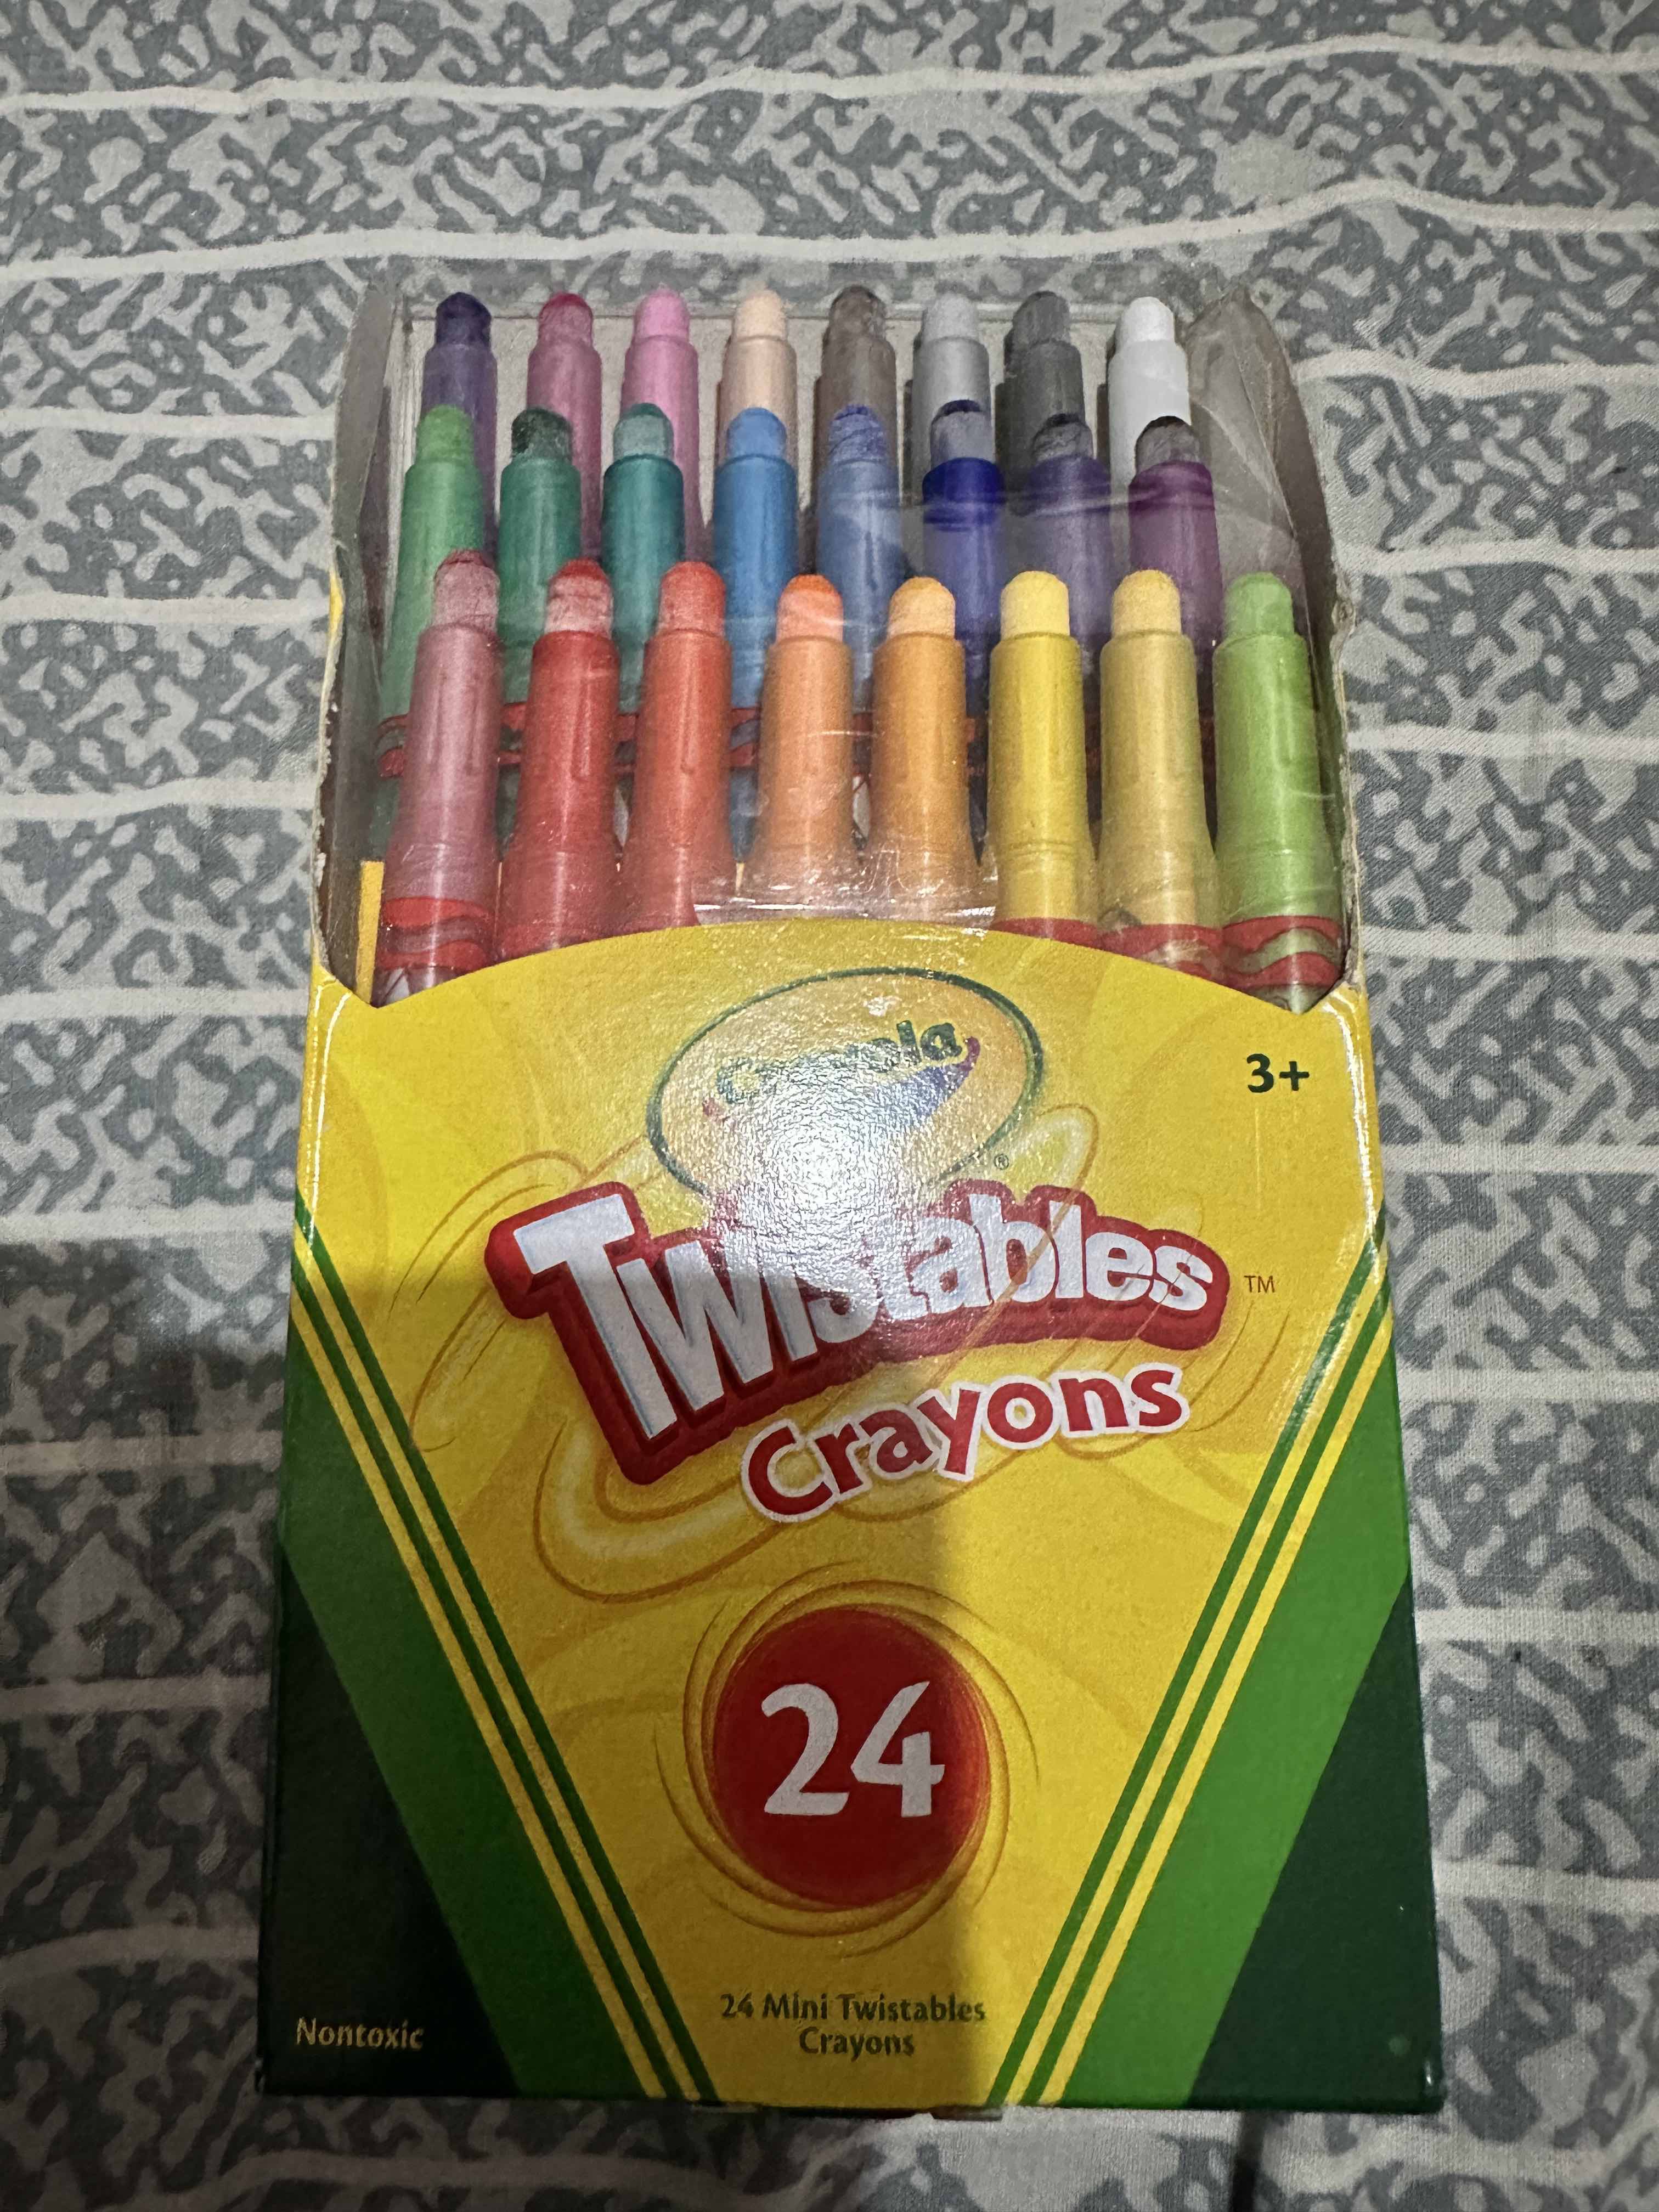 Crayola Twistable Crayons 24 pack